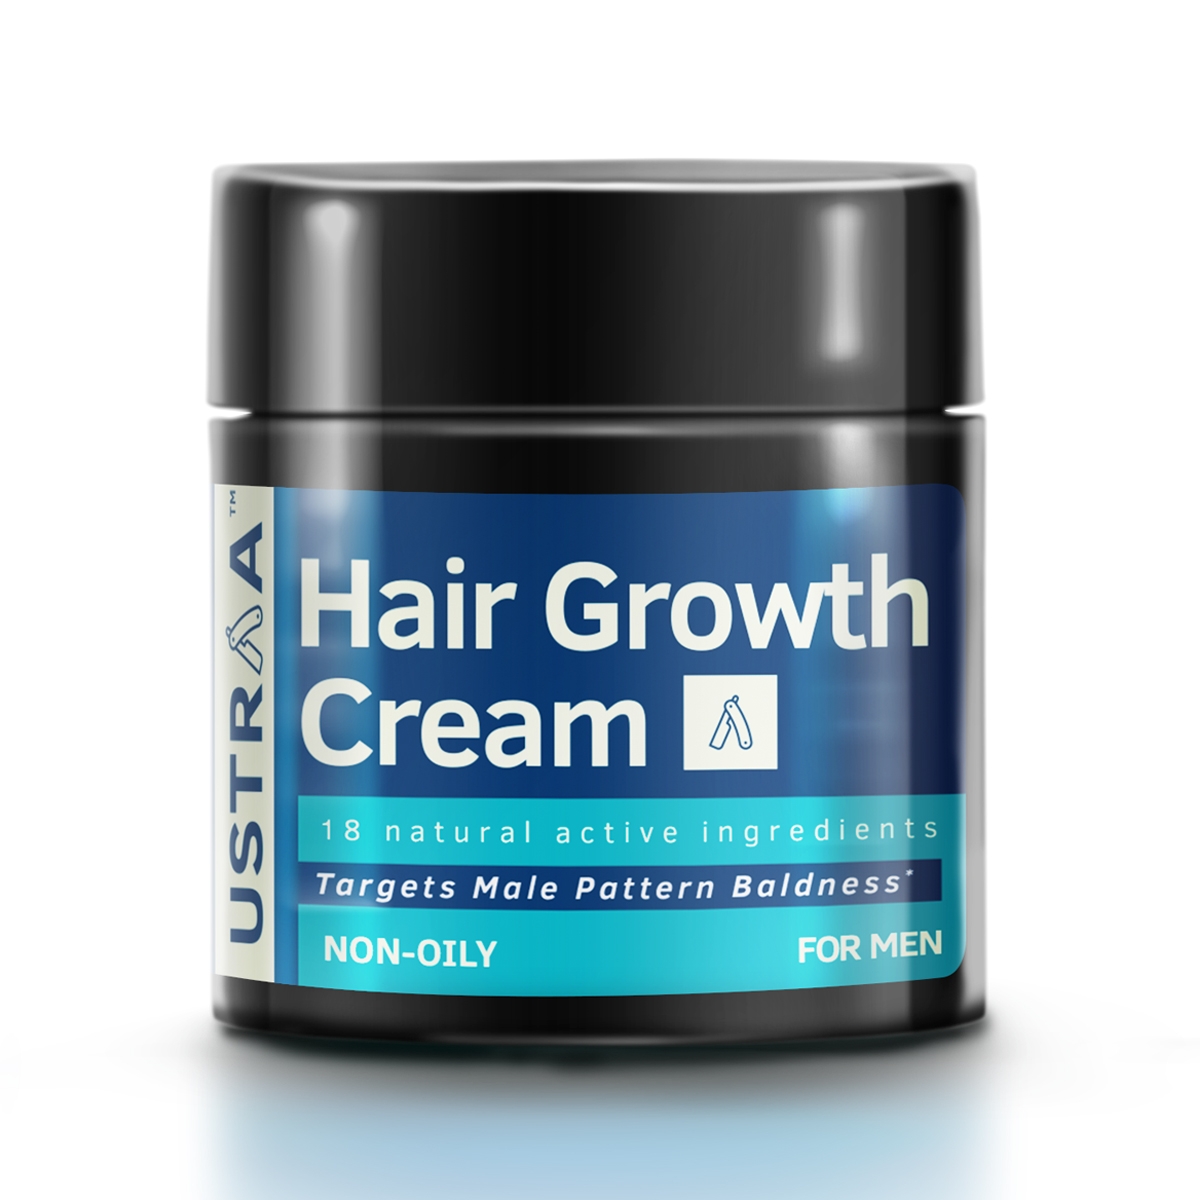 Hair growth Cream - 100g